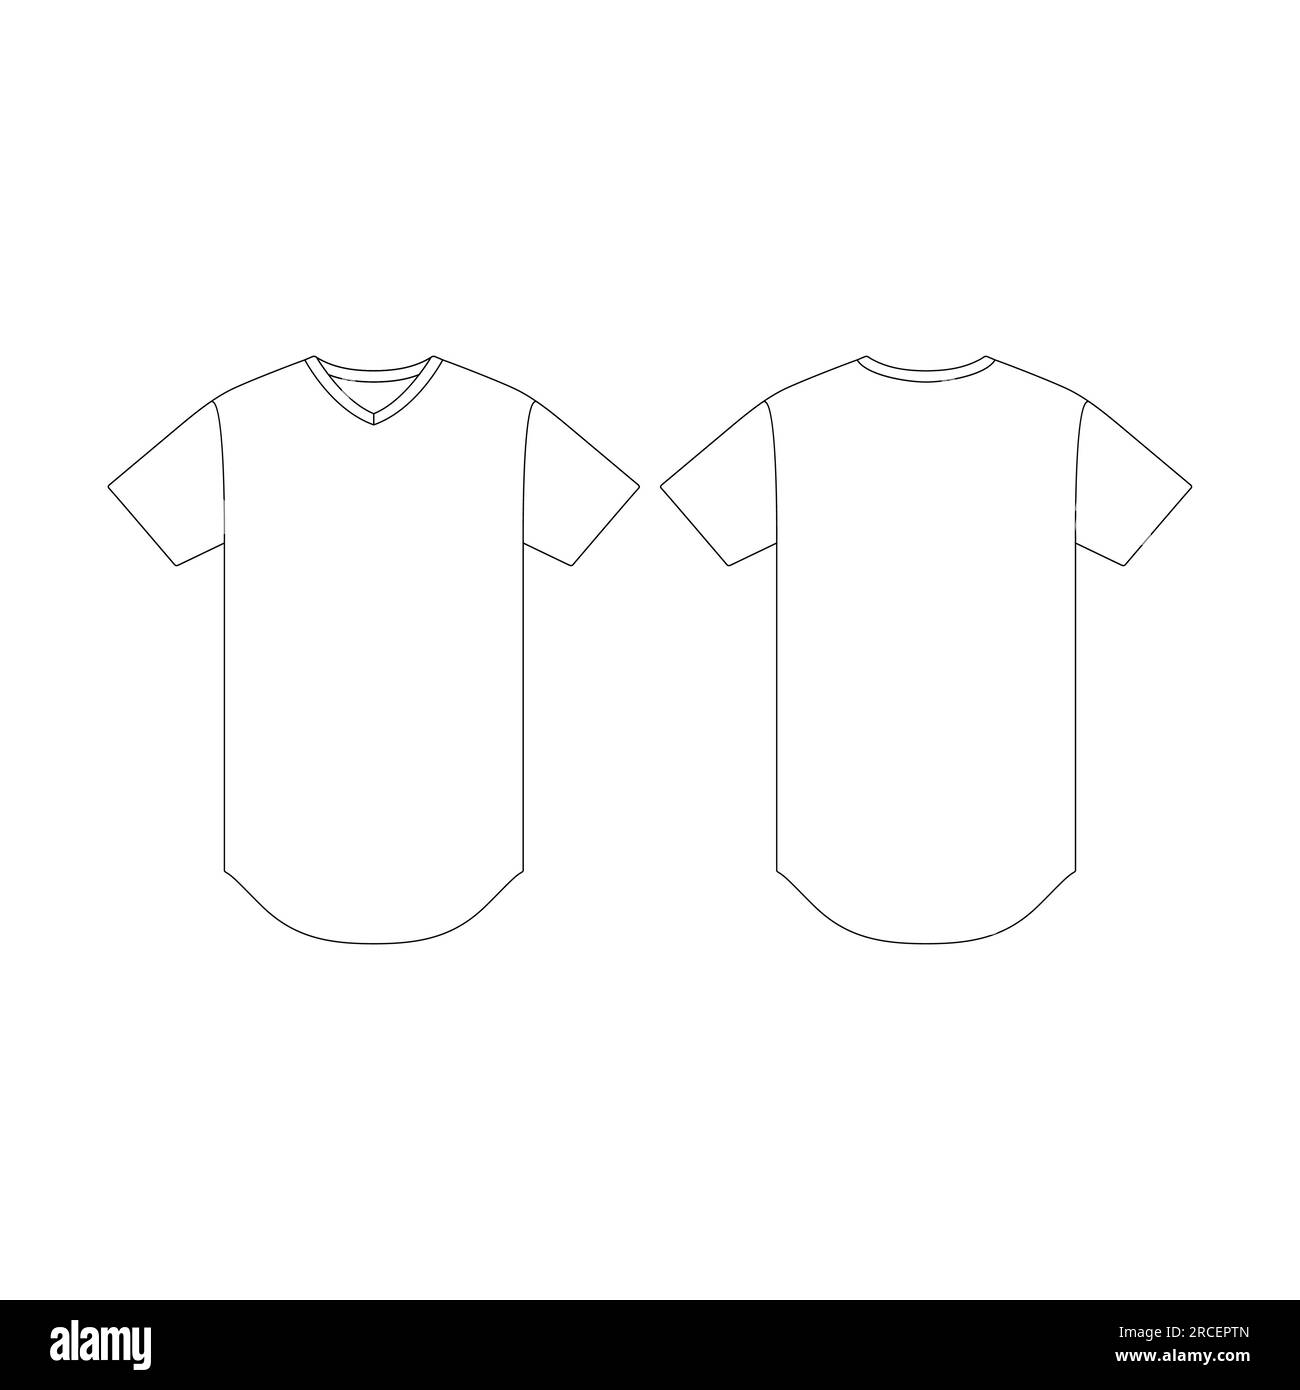 Mens v-neck t-shirt design template front back Vector Image